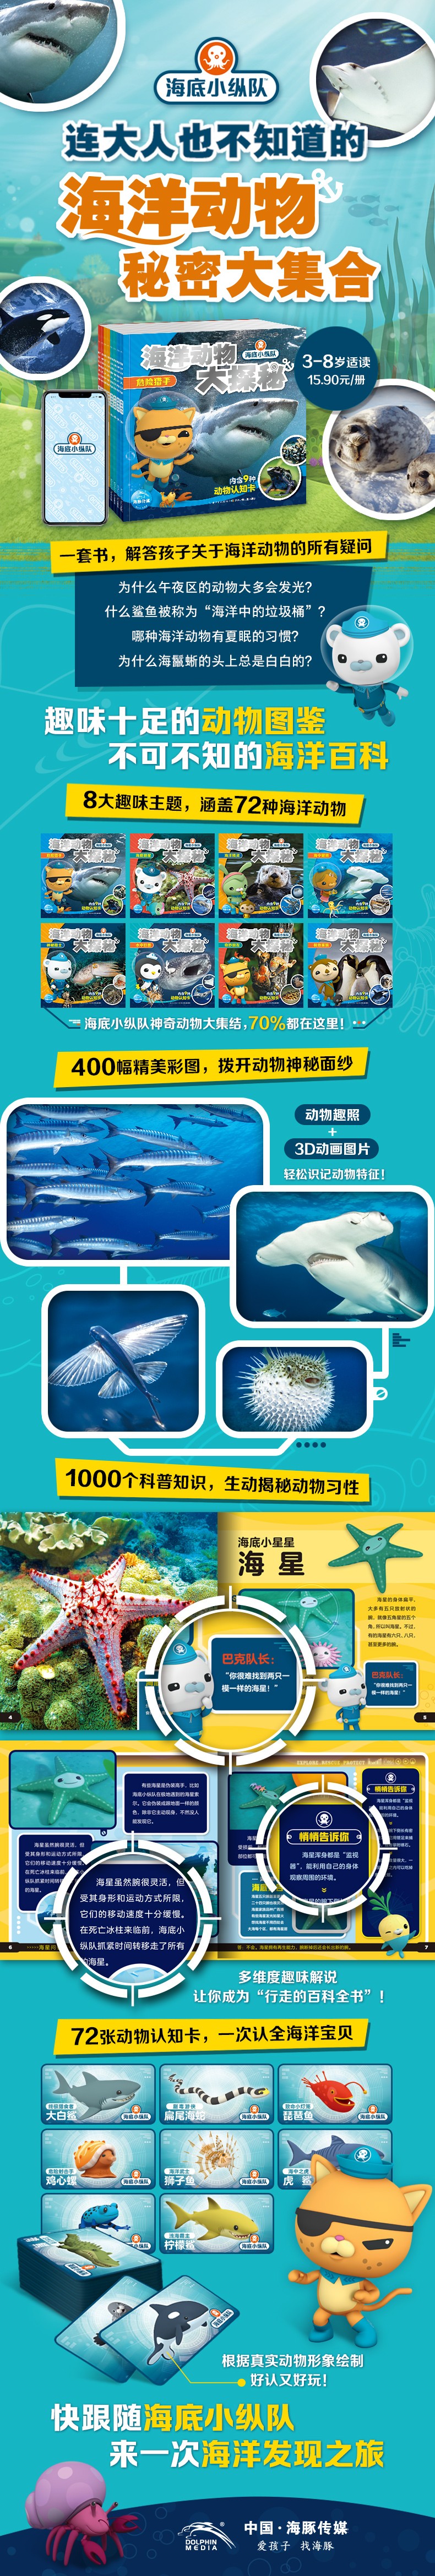 海底小纵队·海洋动物大探秘-详情页790.jpg